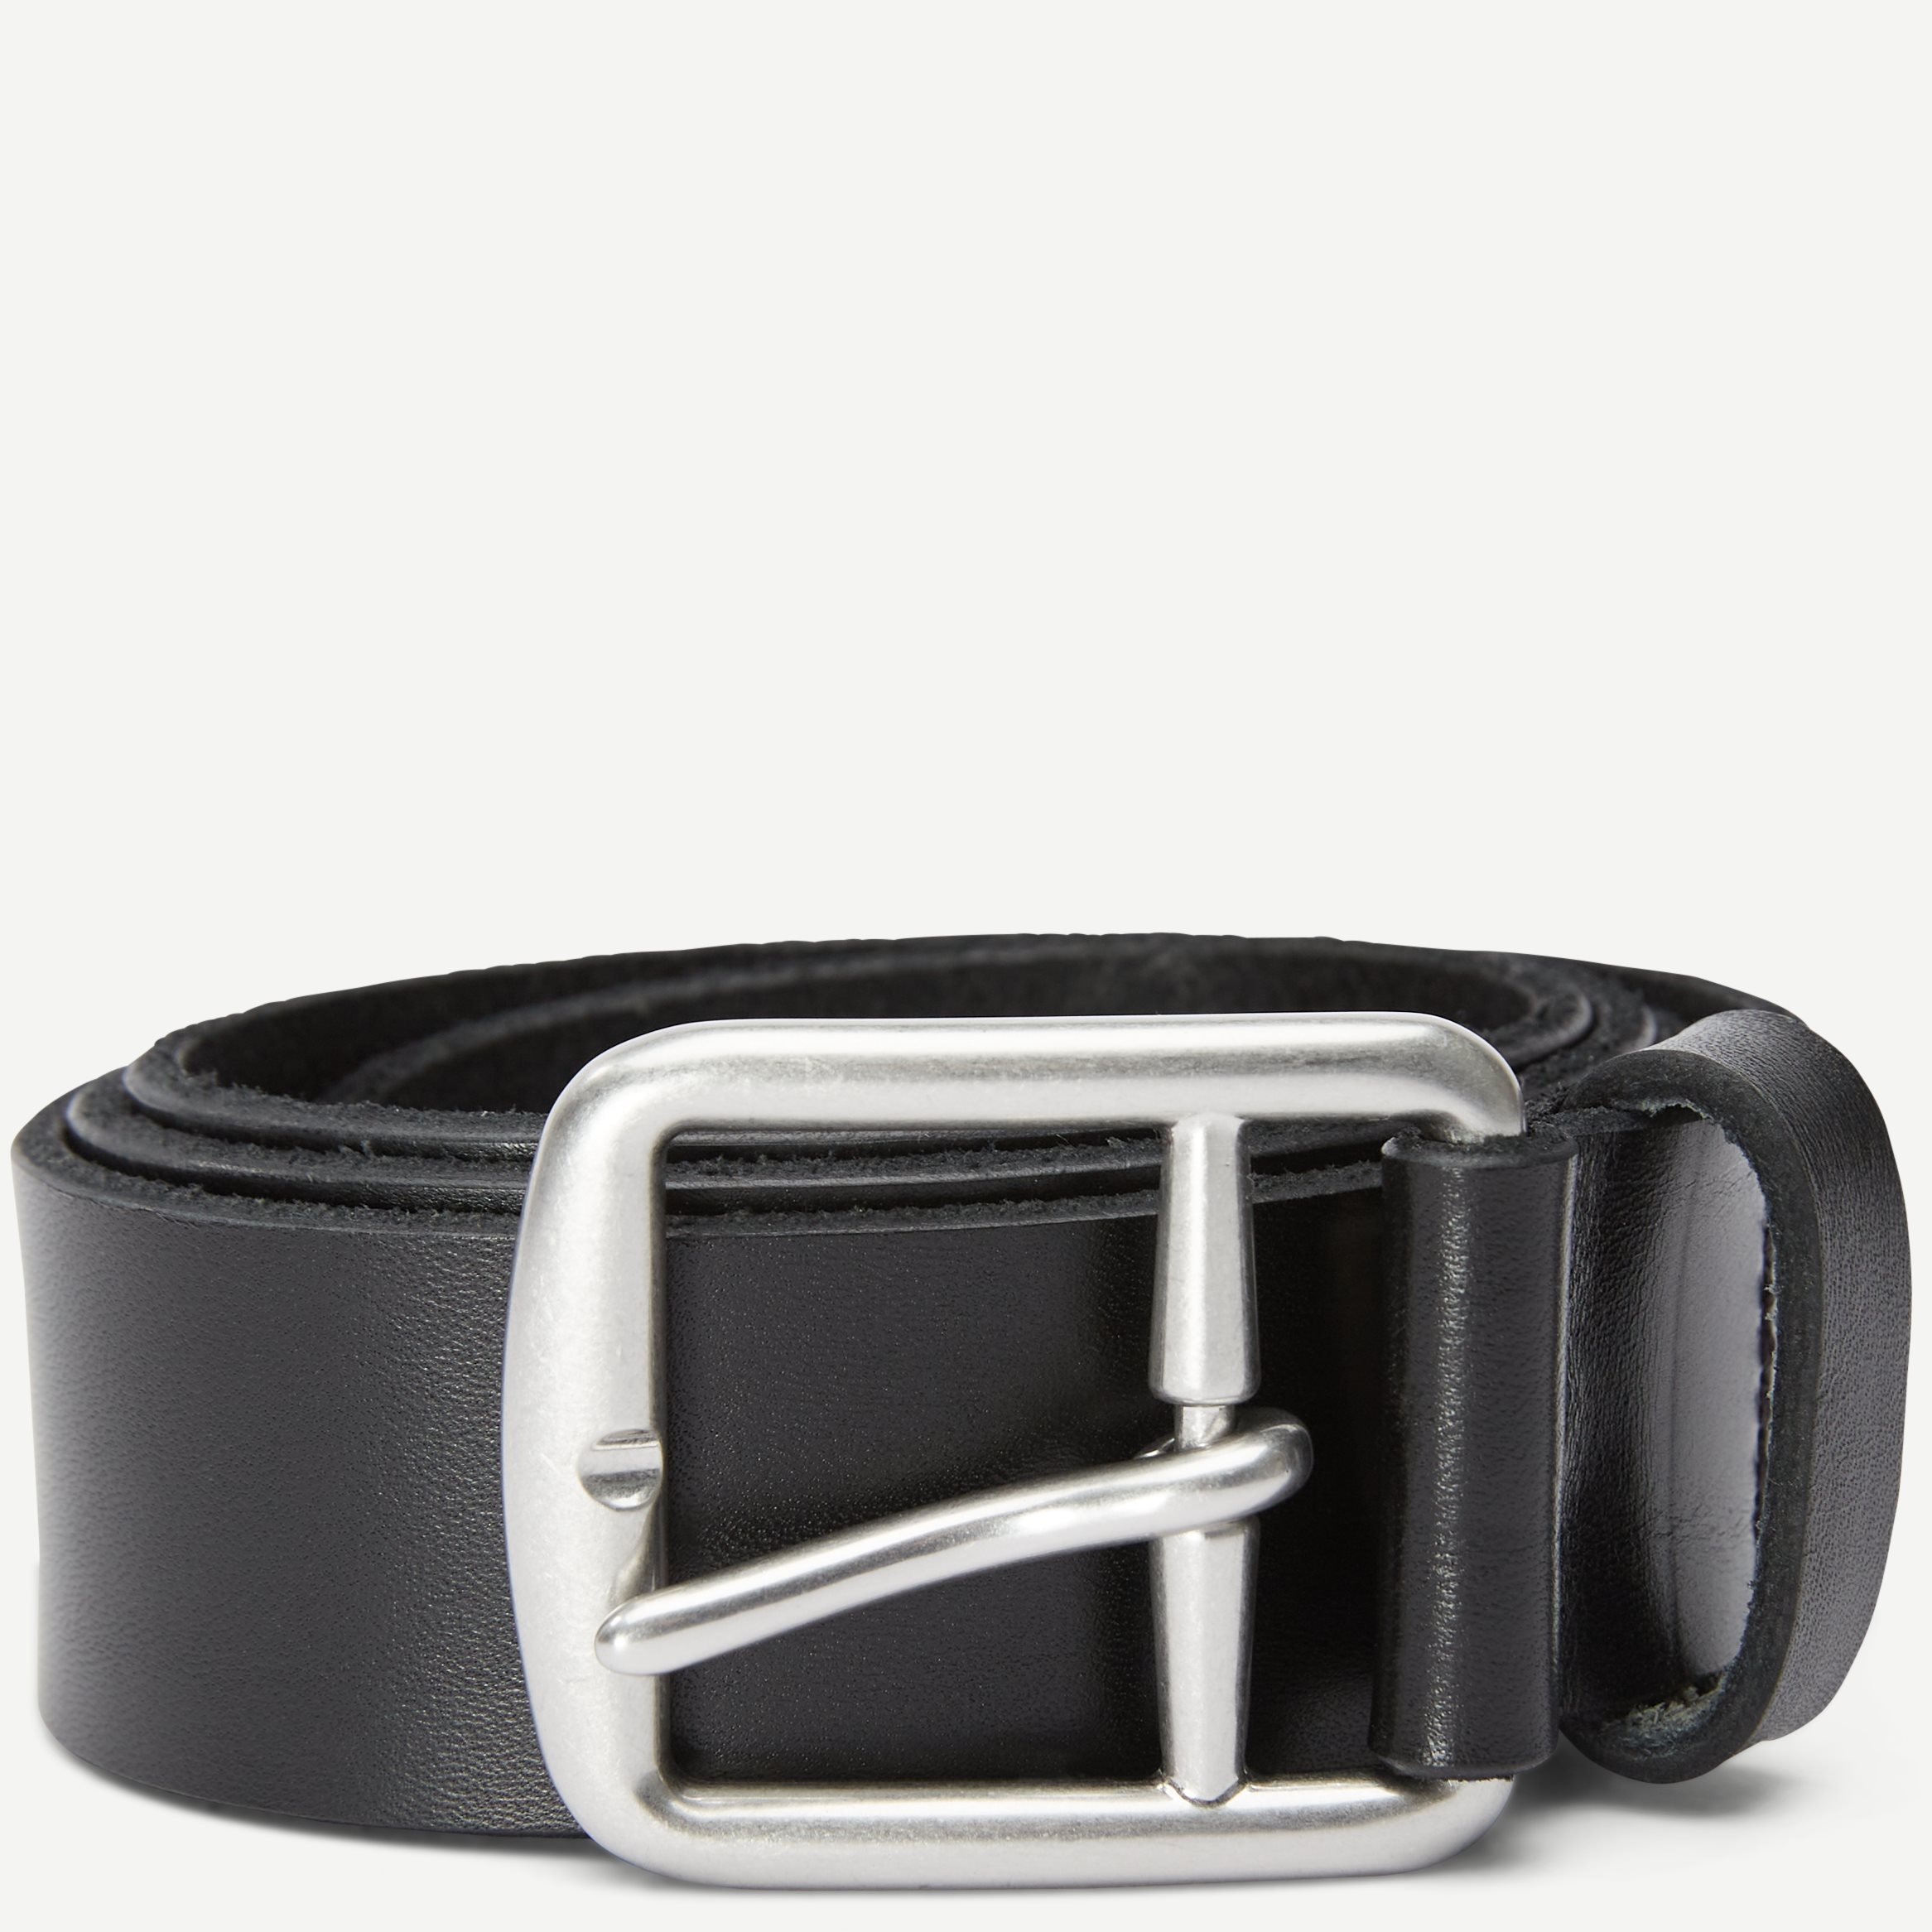 Saddlr Belt - Belts - Black